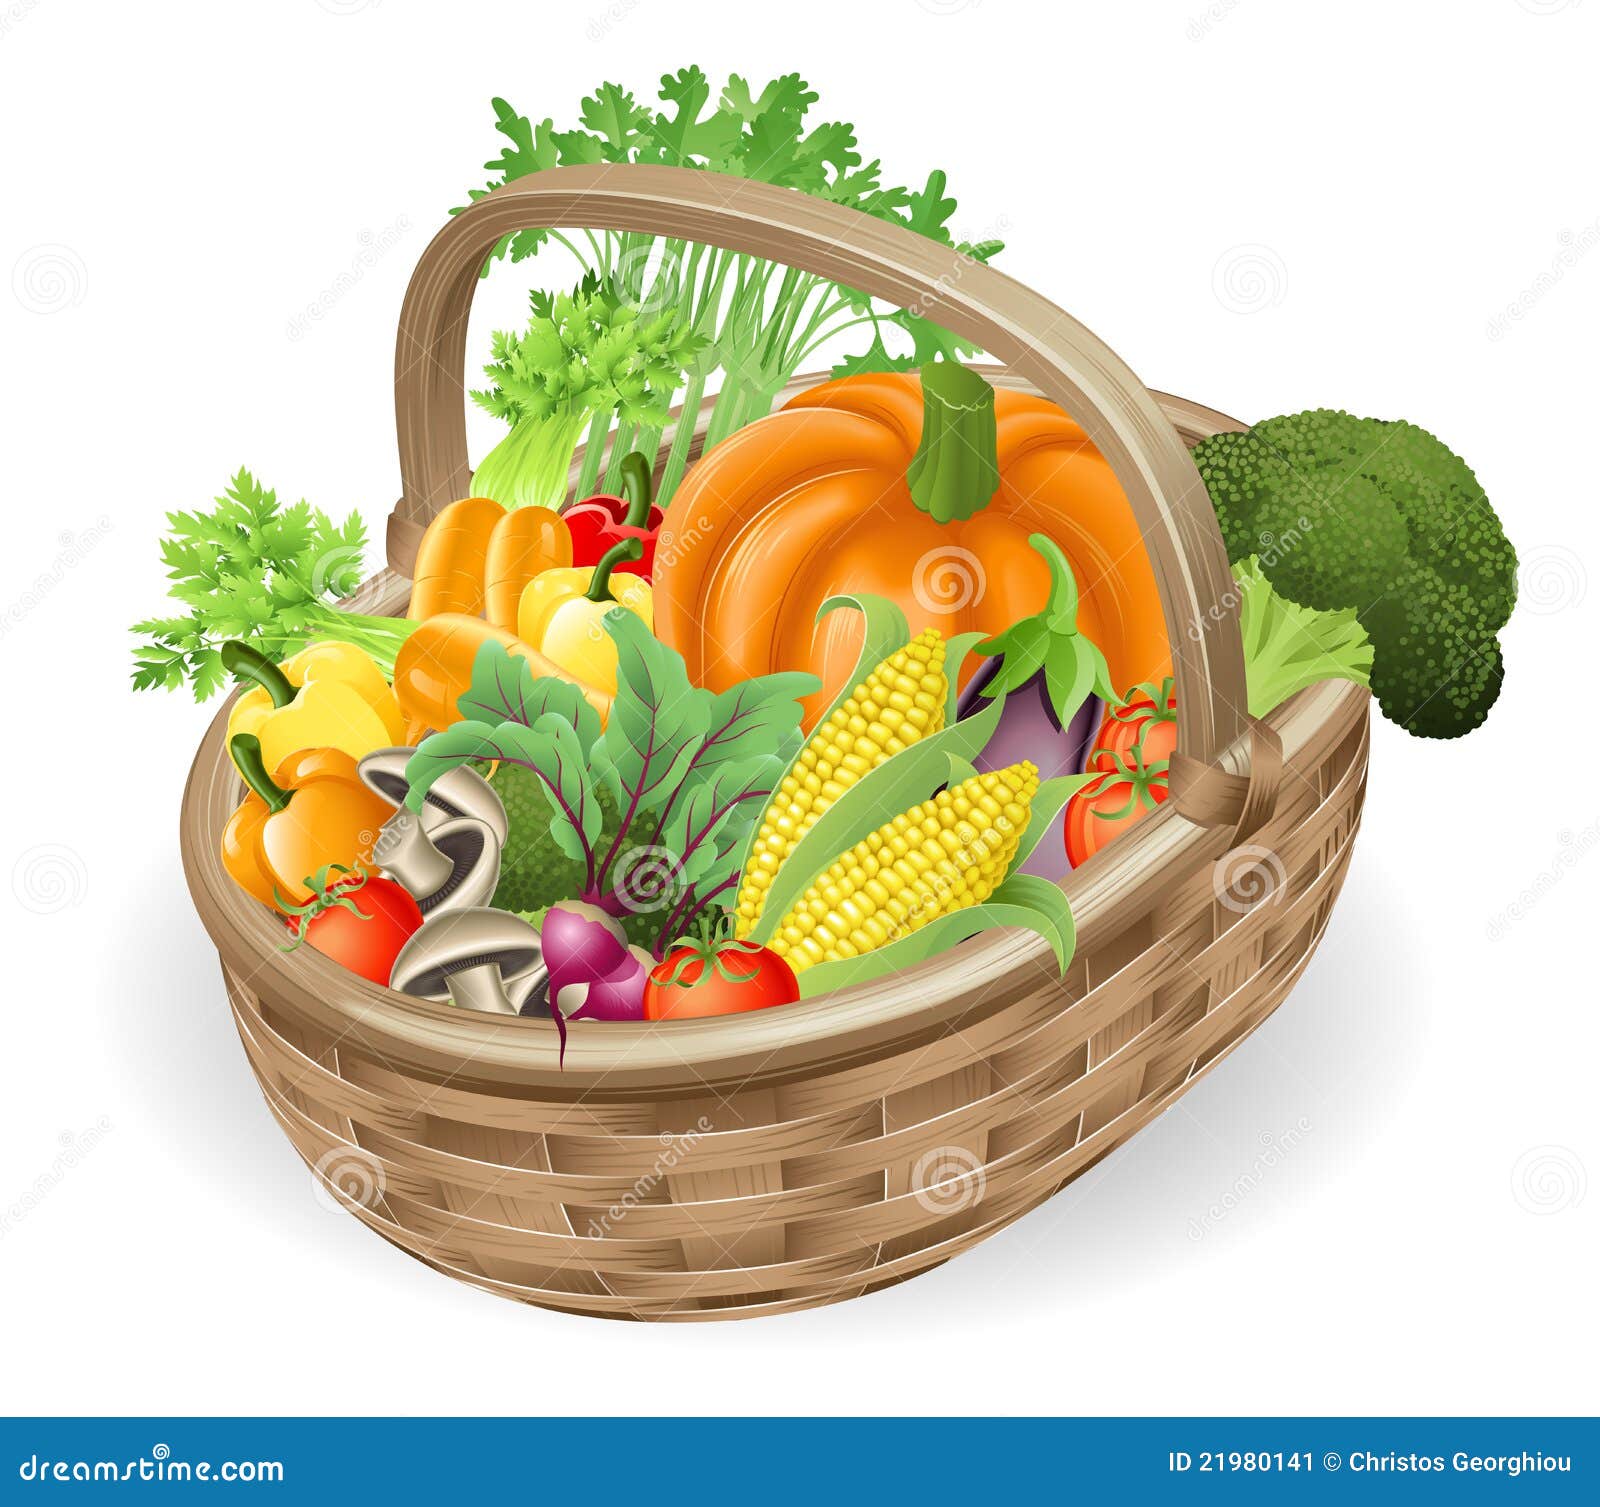 basket fresh vegetables